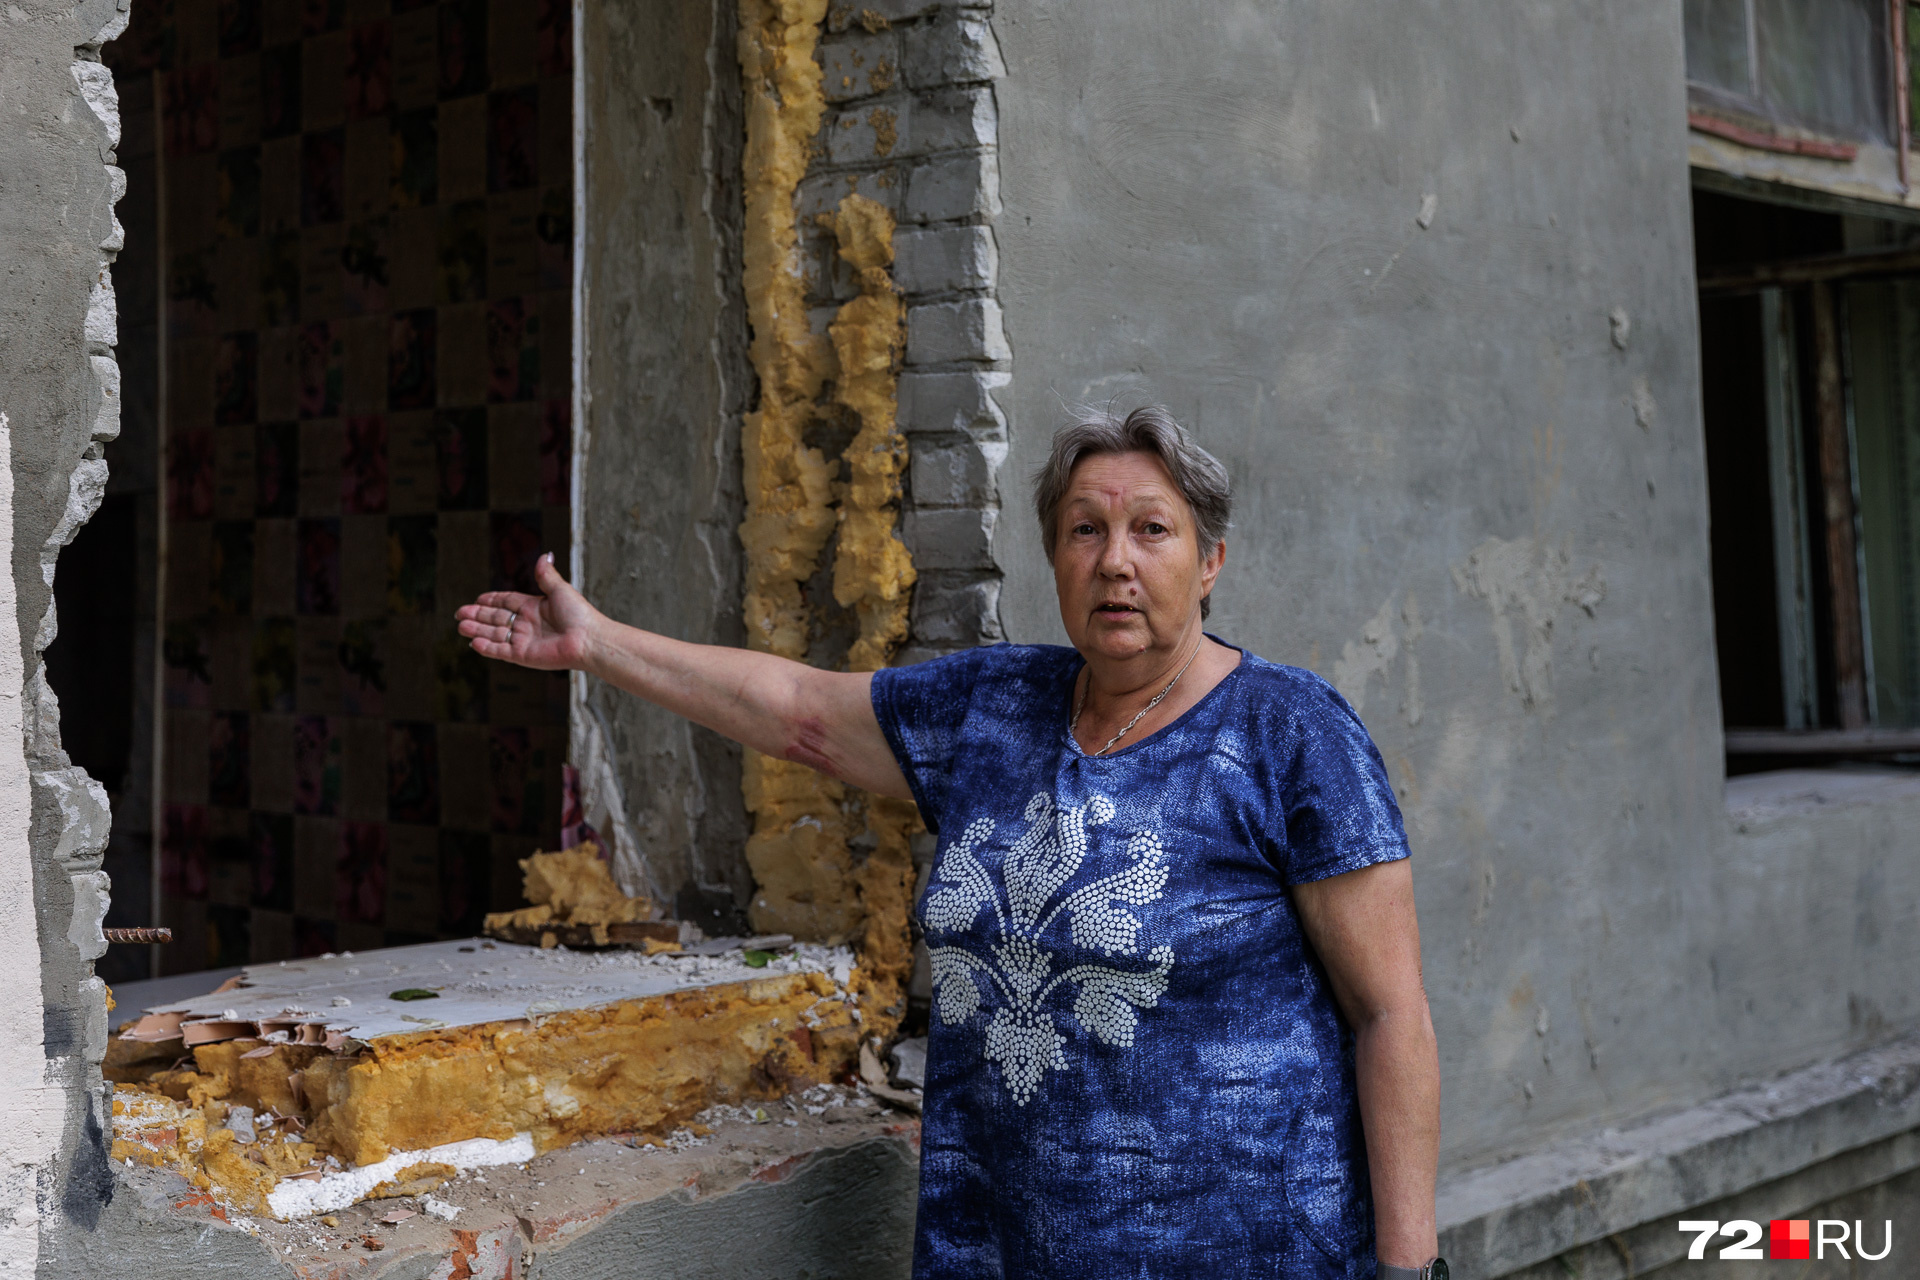 Сапкулова жила в этом доме вместе с семьей и двумя опекаемыми внуками и не жаловалась на условия